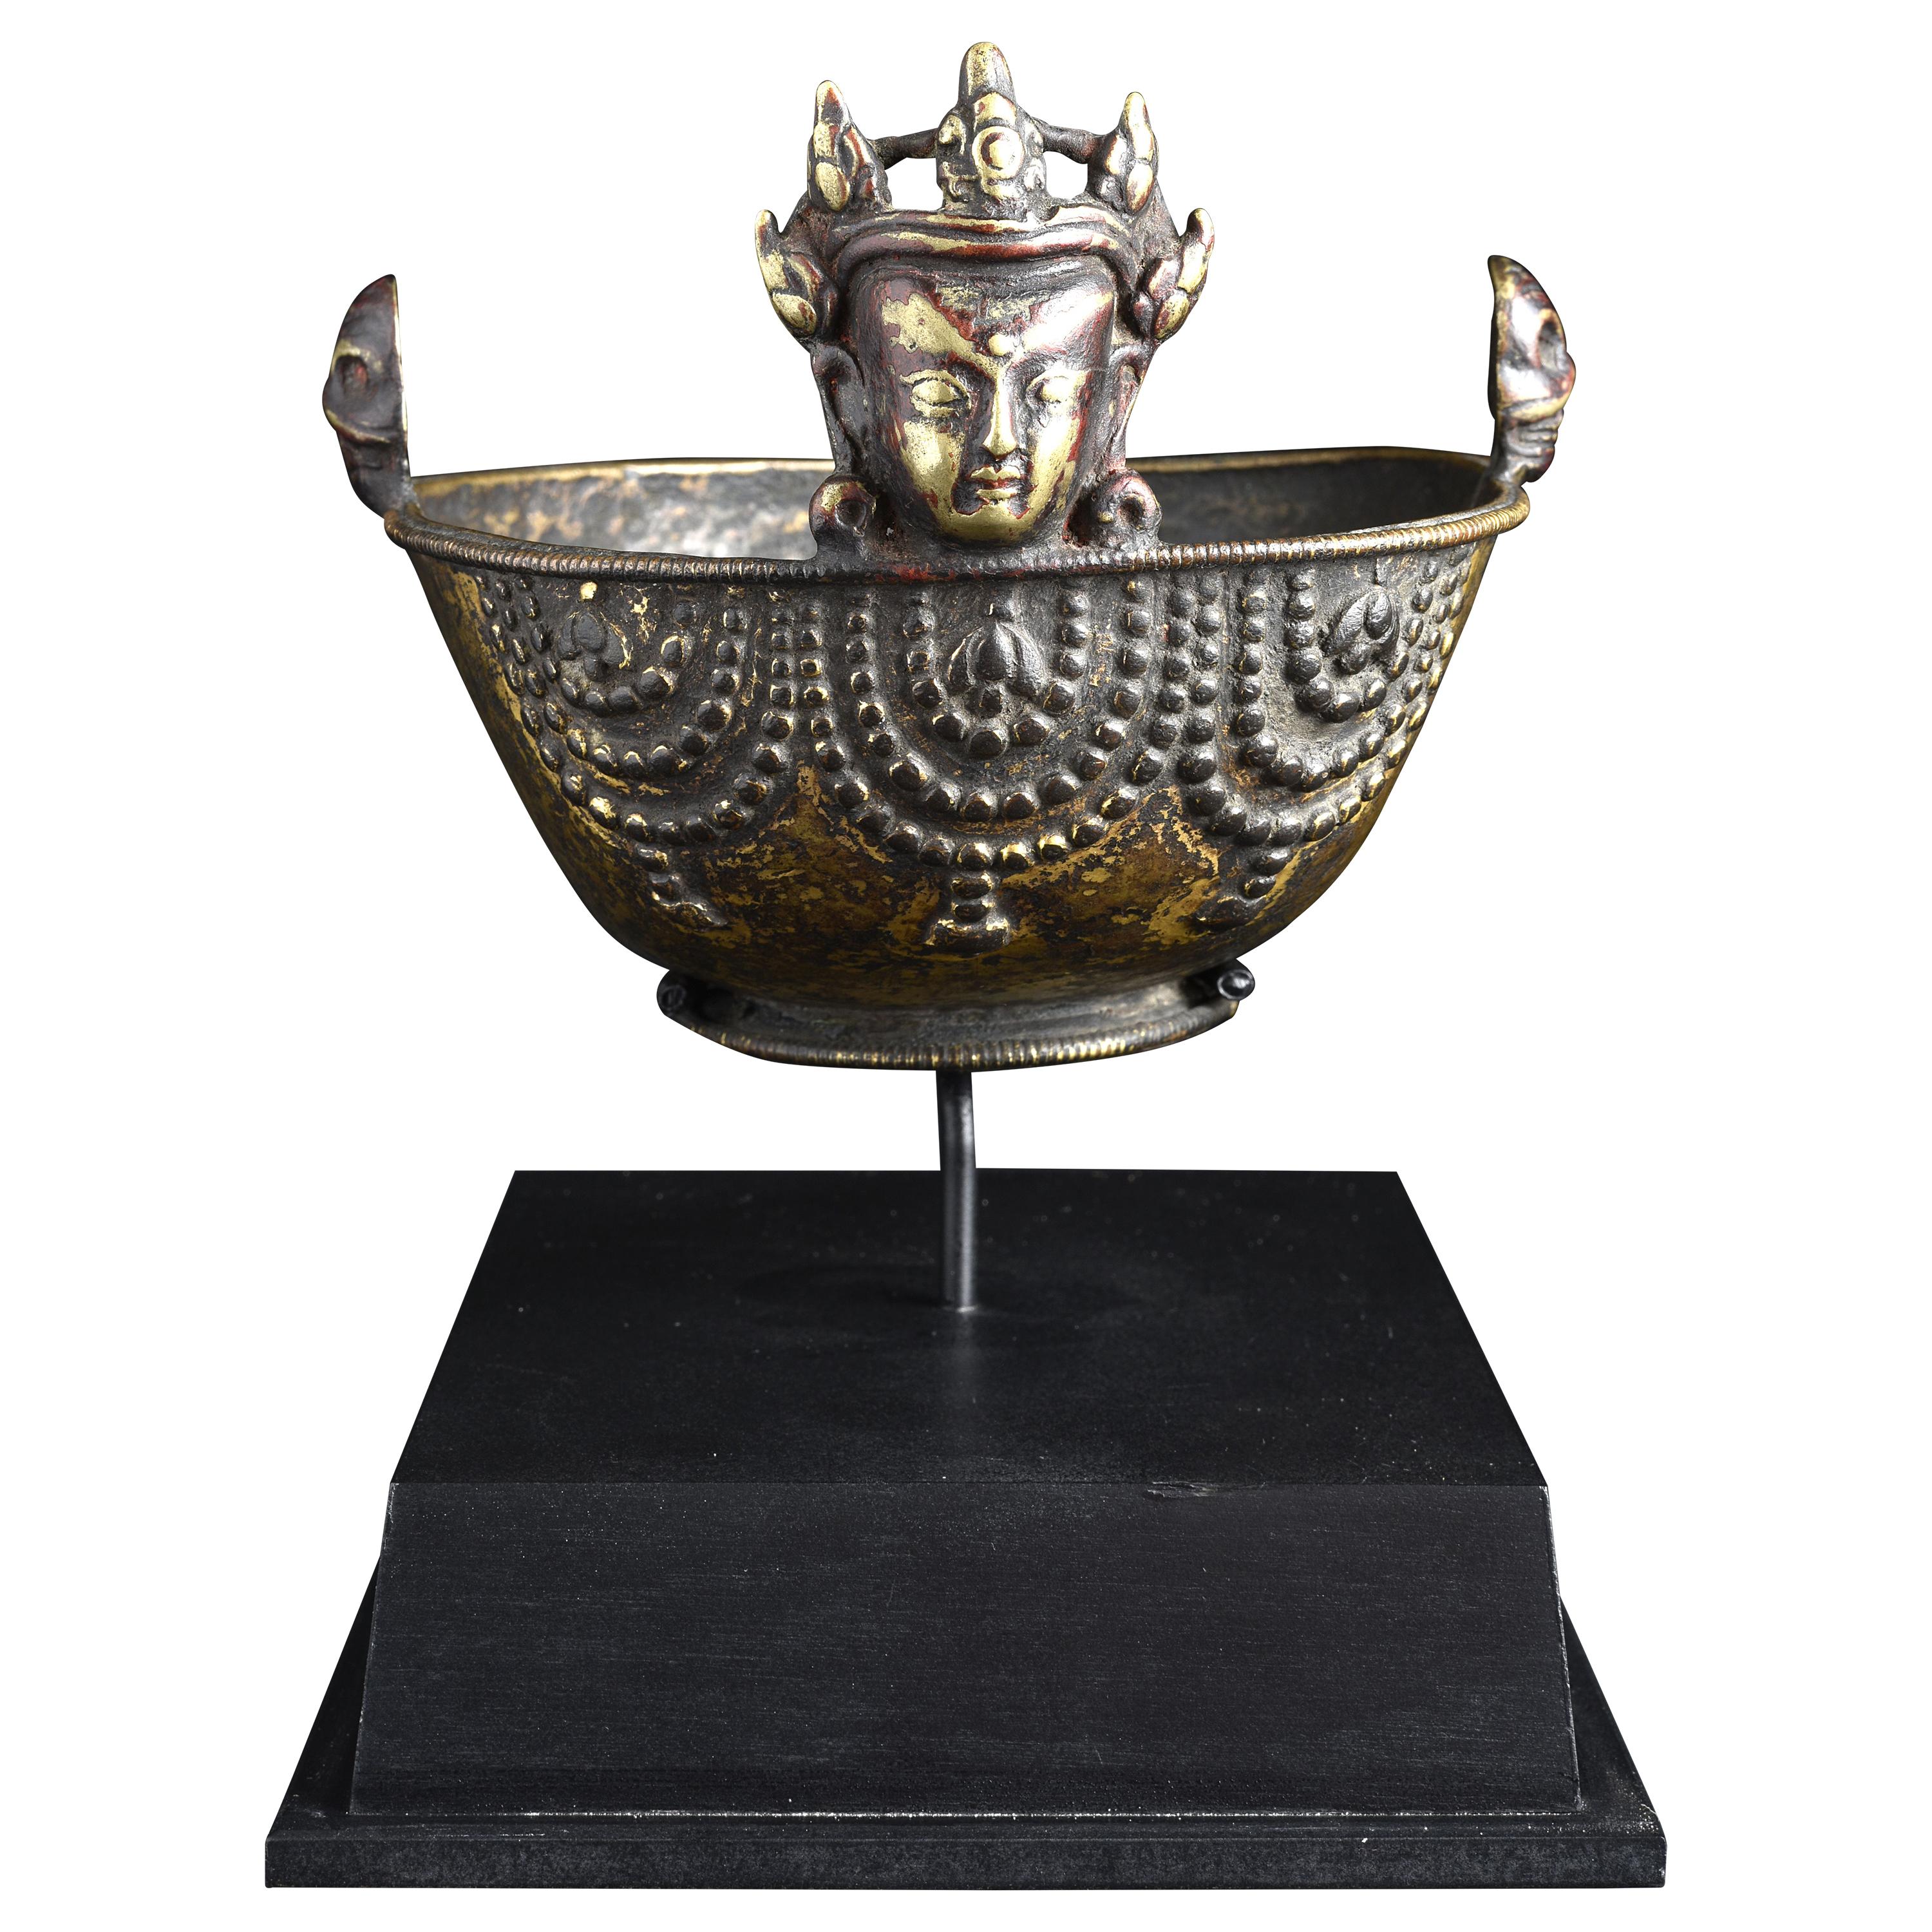  16/17thc Tibetan Bronze Skull Cup - 9026 For Sale